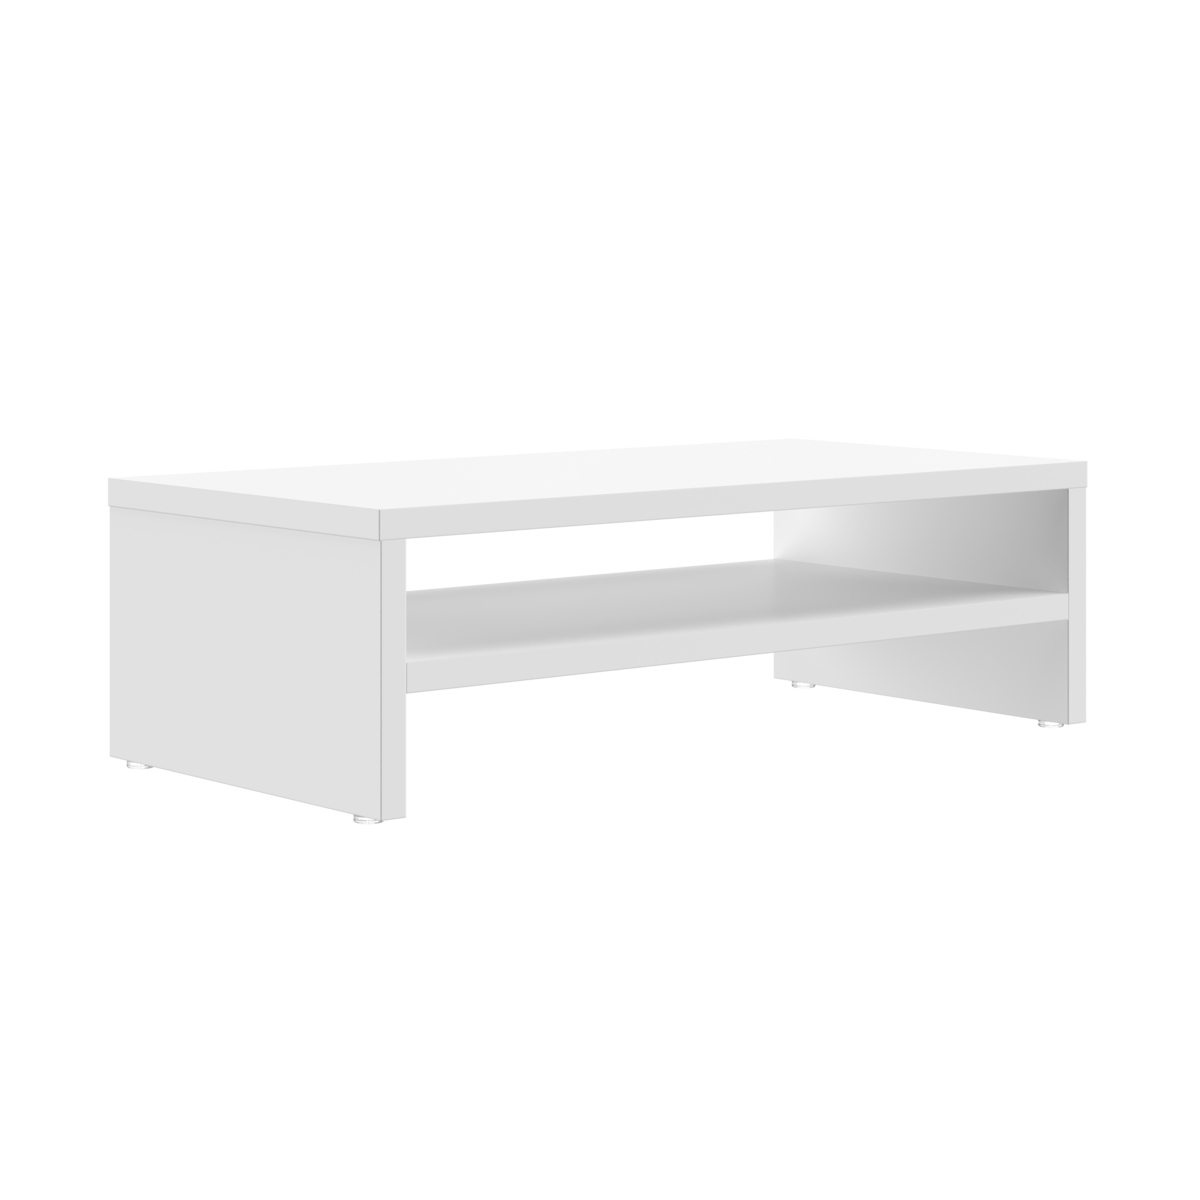 Aparador para monitor, apoio de mesa para monitor, prateleira mesa - Branco - 2